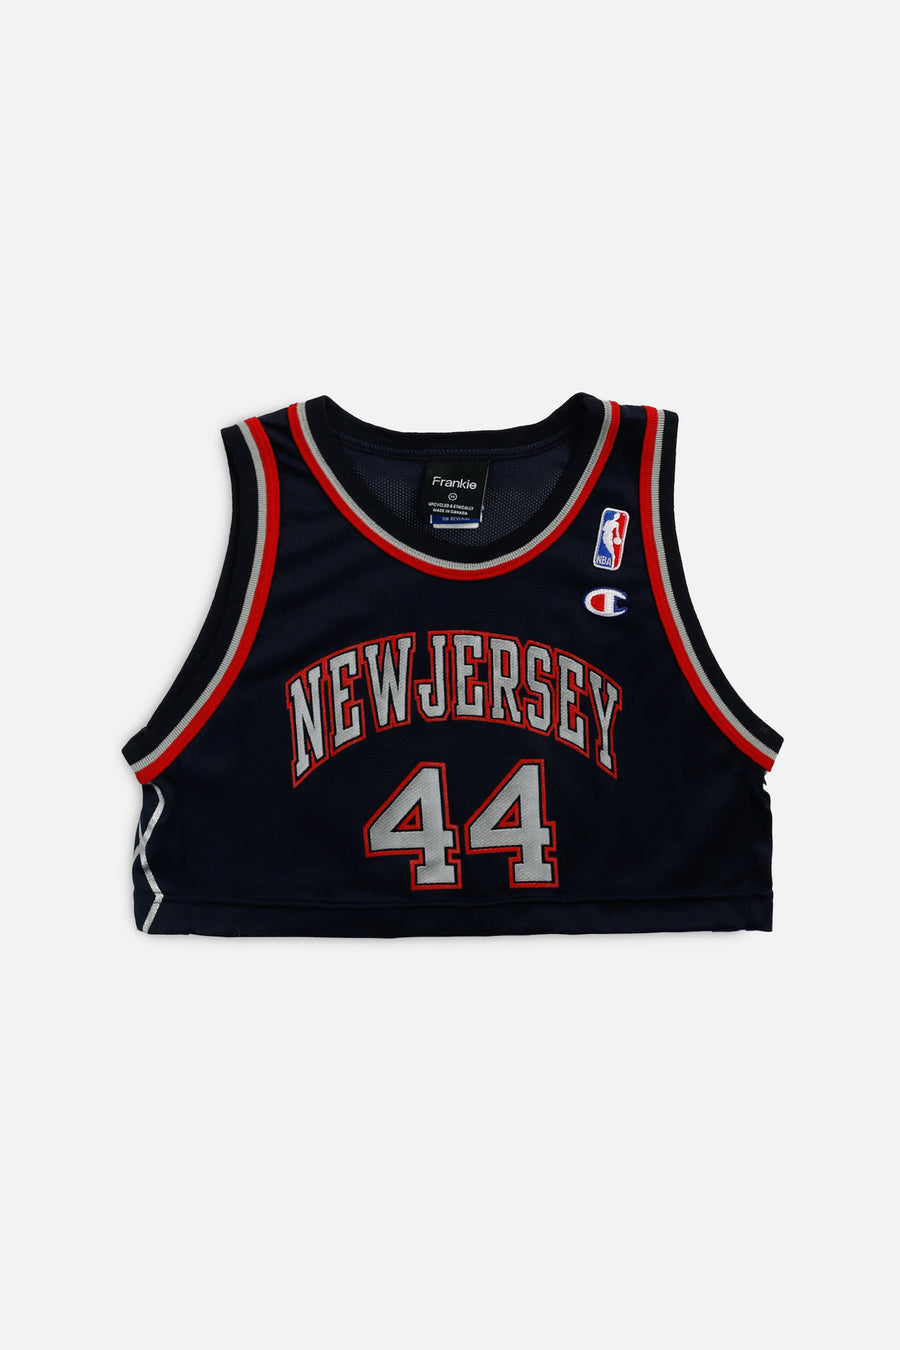 Rework New Jersey Nets NBA Crop Jersey - XS